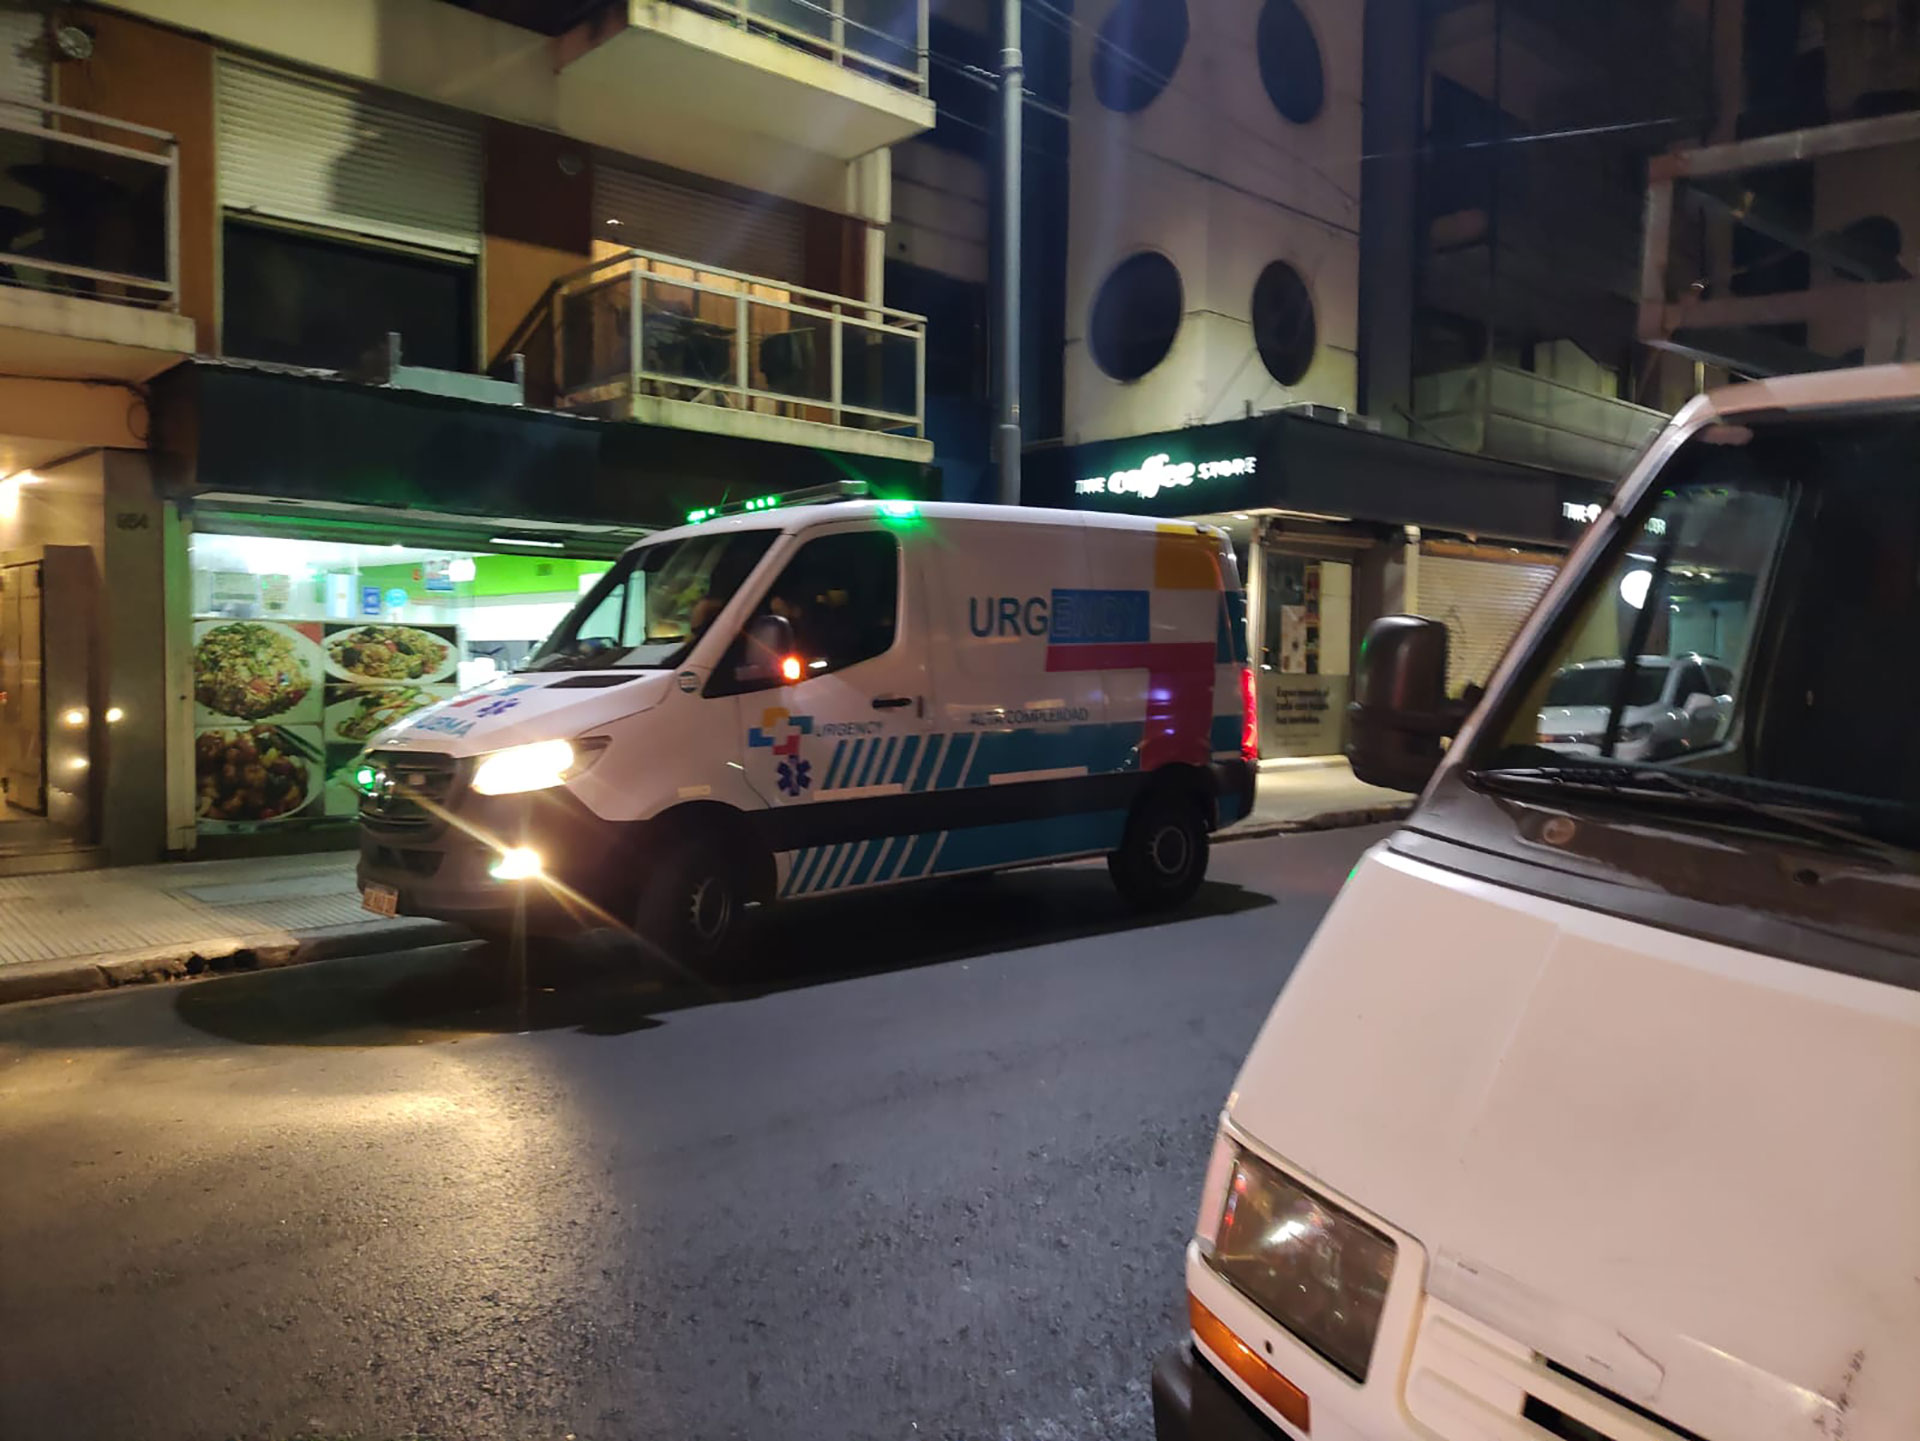 Una de las ambulancias de la empresa Urgency Dom, en donde trabajaba el falso médico